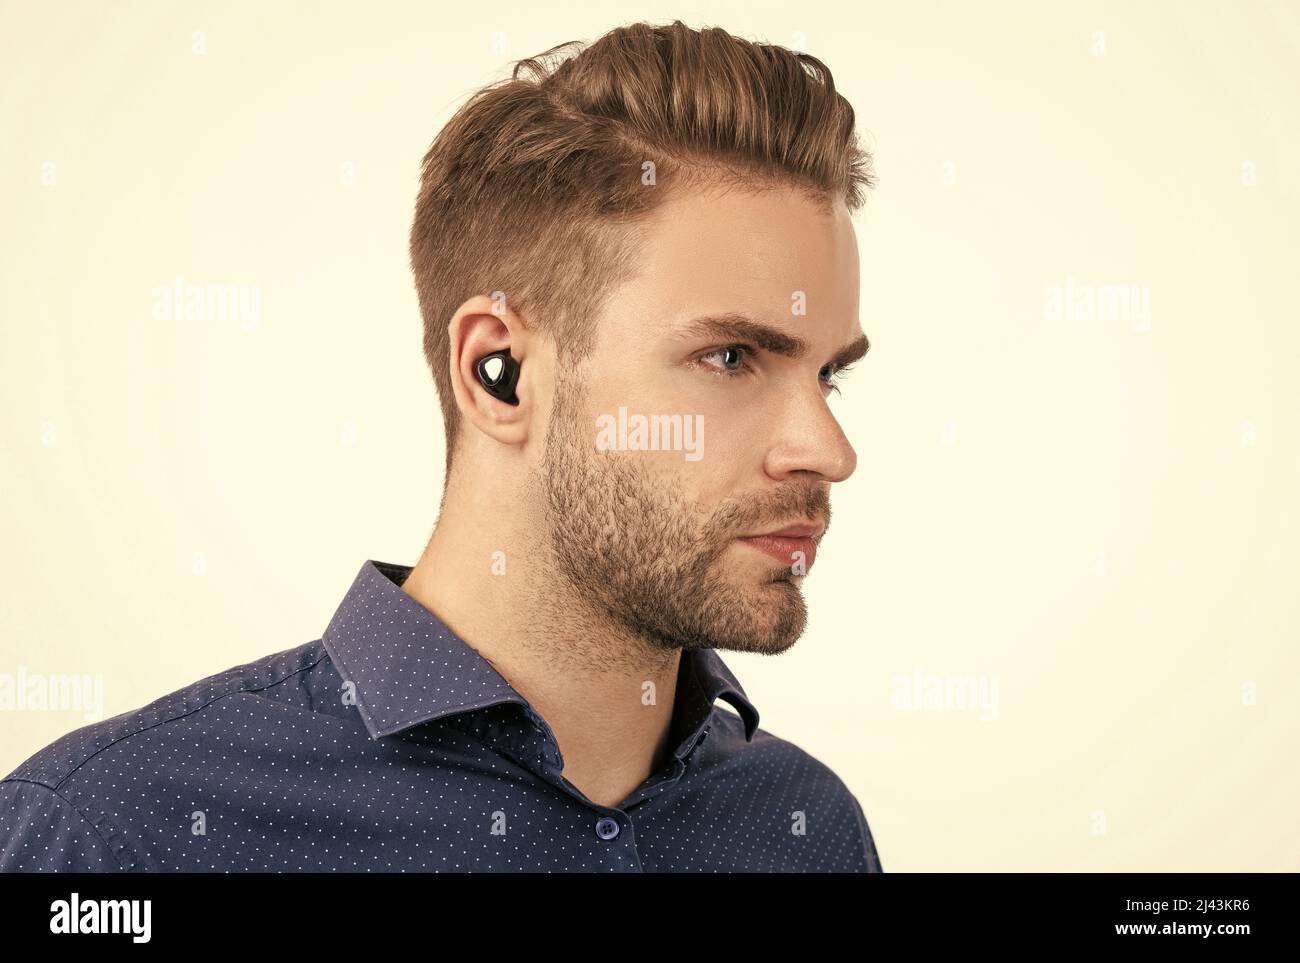 bell'uomo senza rasature con auricolari bluetooth wireless isolati sulla tecnologia bluetooth bianca Foto Stock